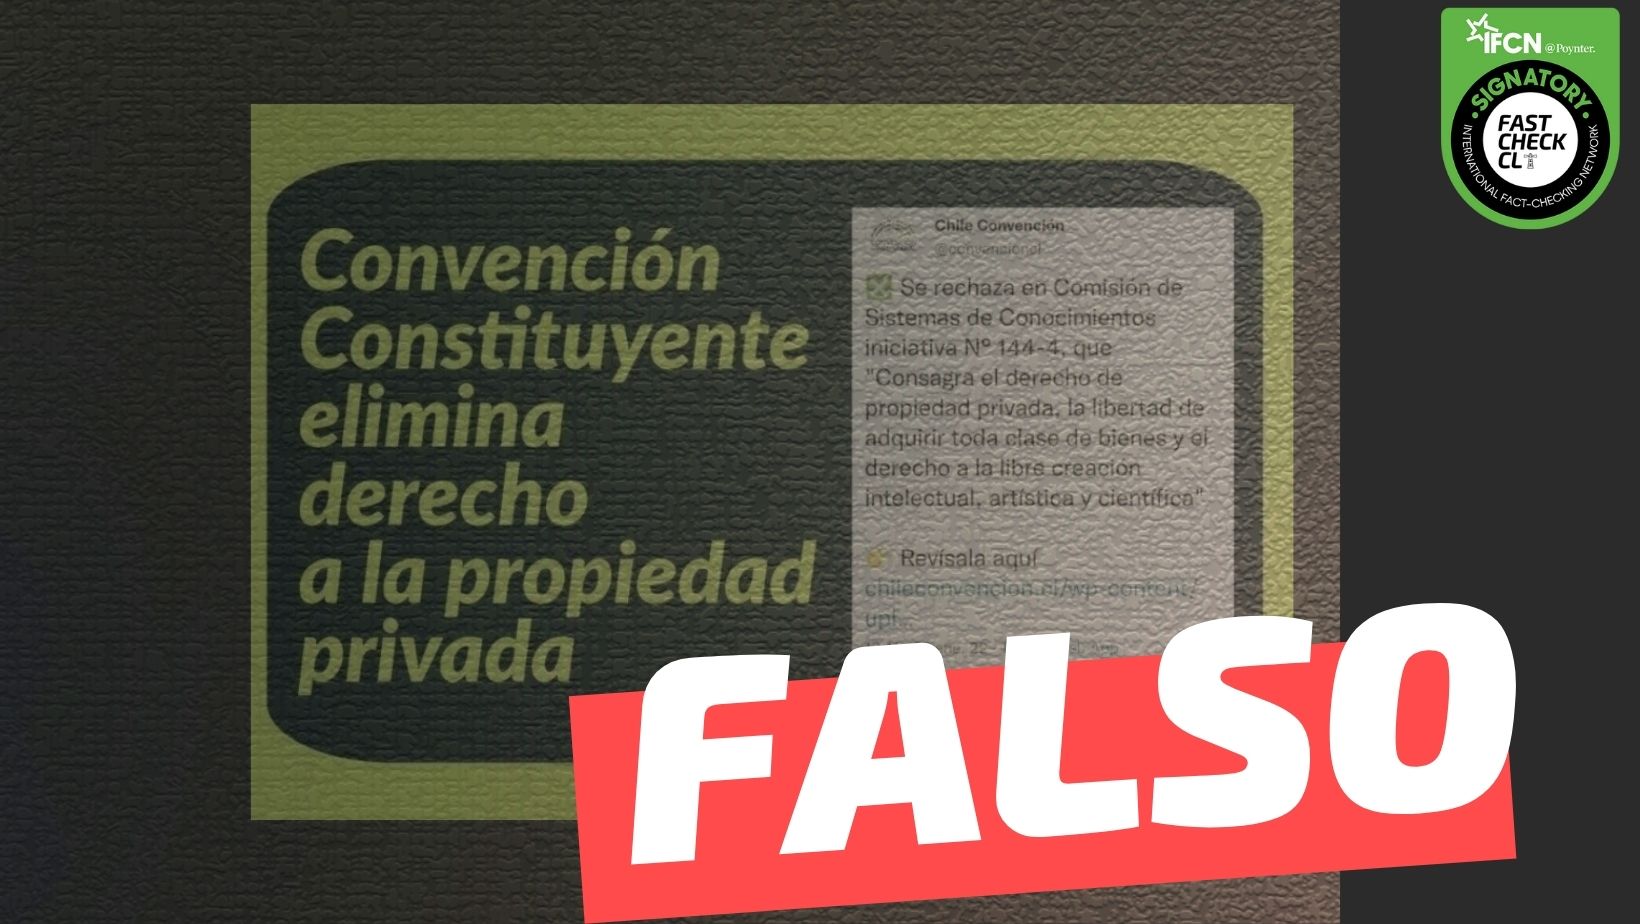 Read more about the article “Convención Constituyente elimina derecho a la propiedad privada”: #Falso